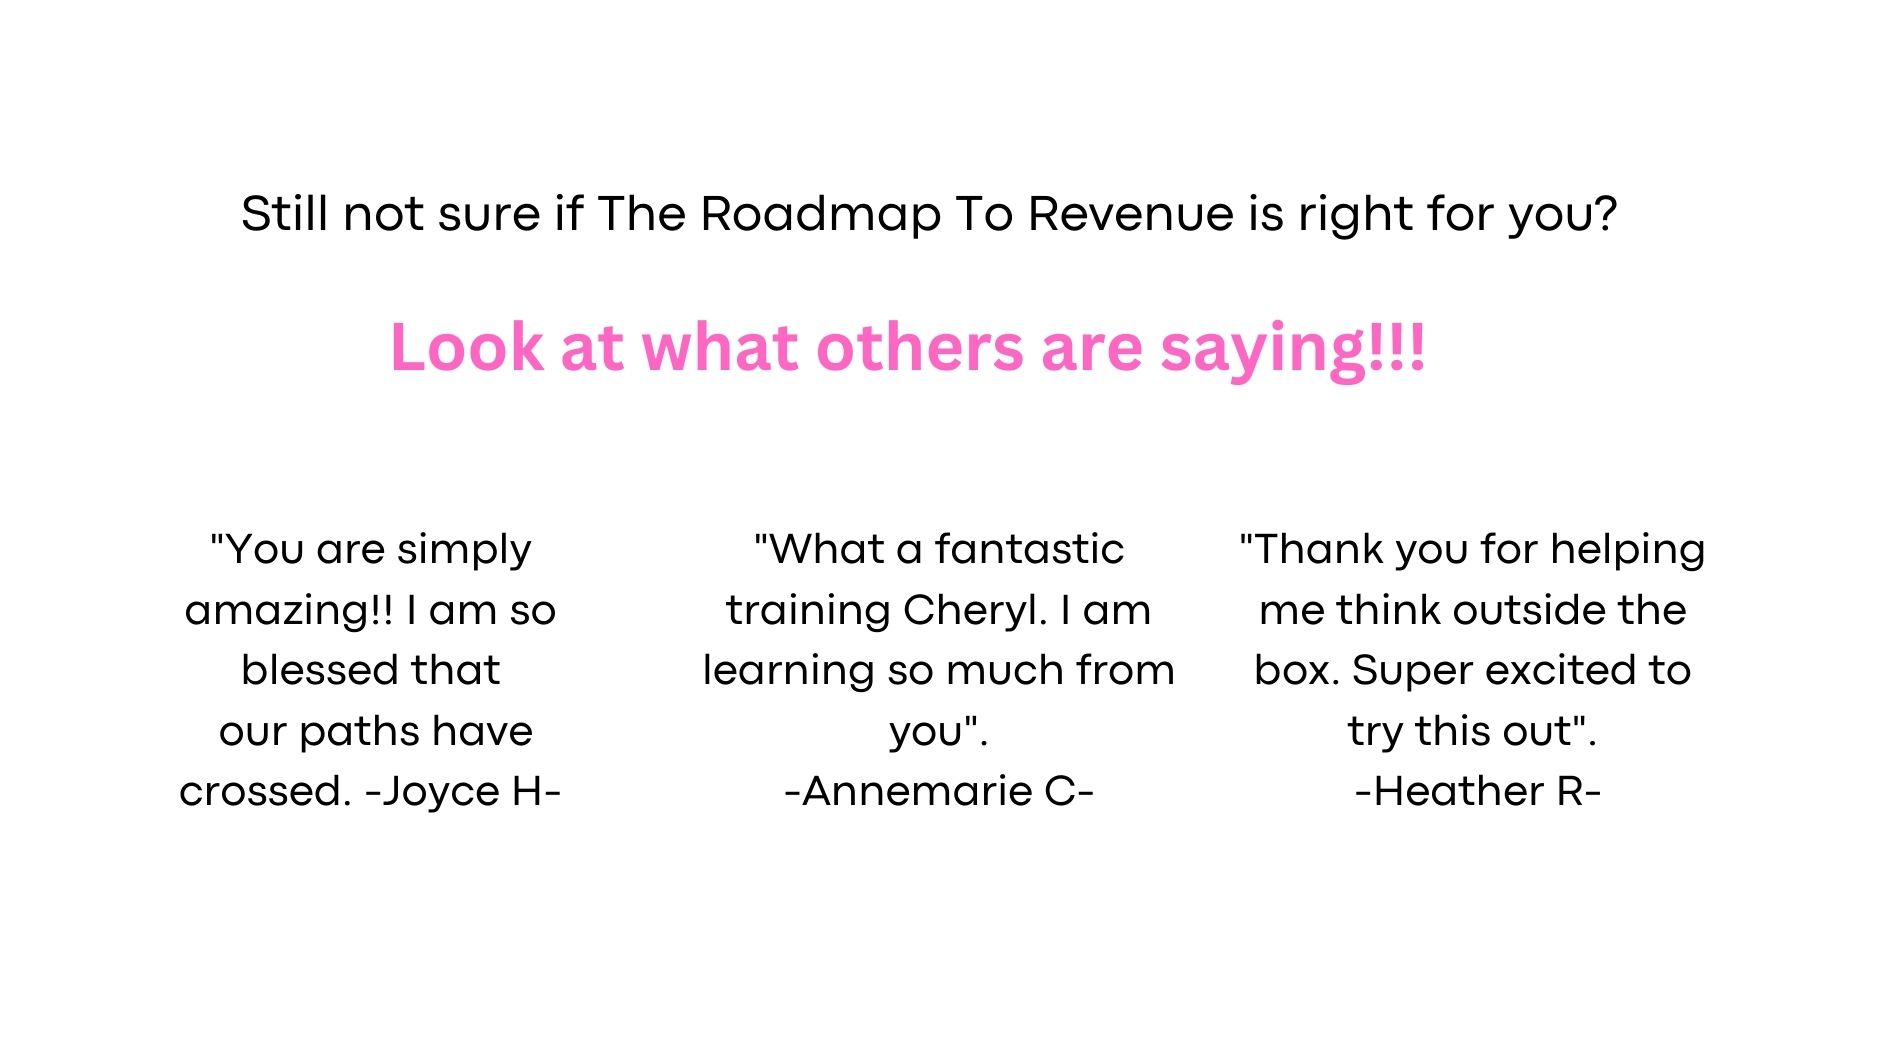 The Roadmap to Revenue